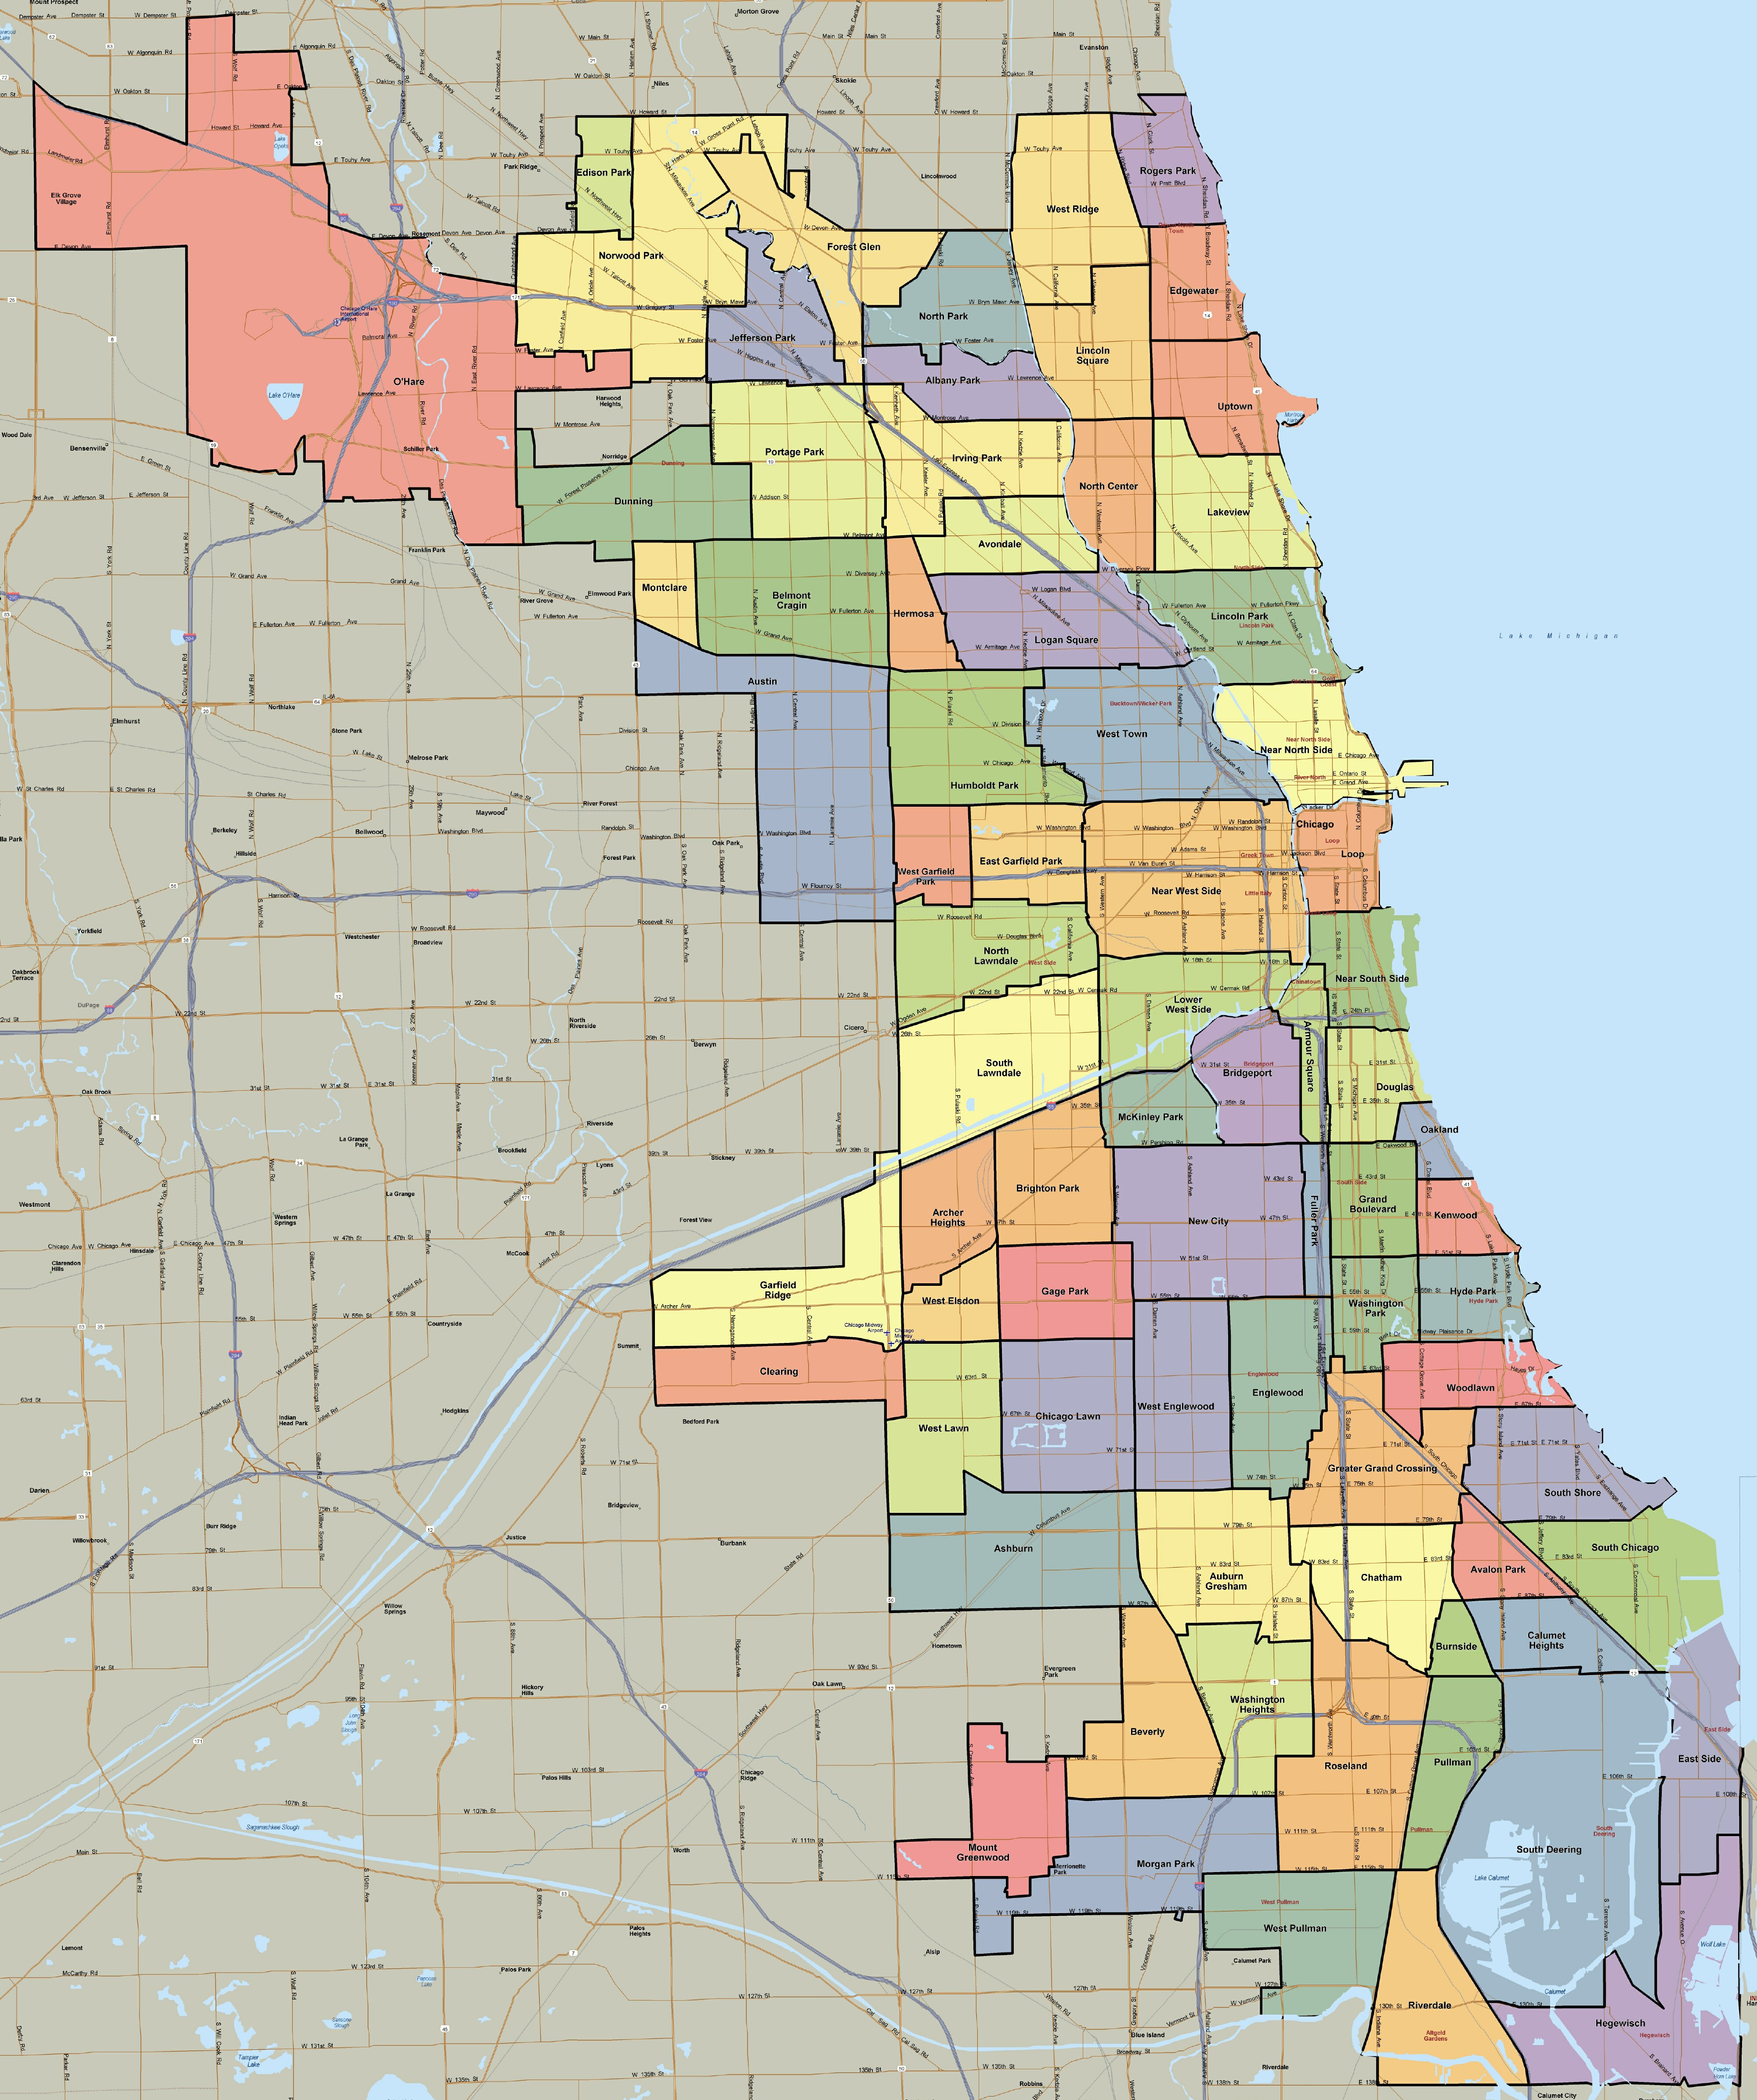 Chicago Neighborhood Map